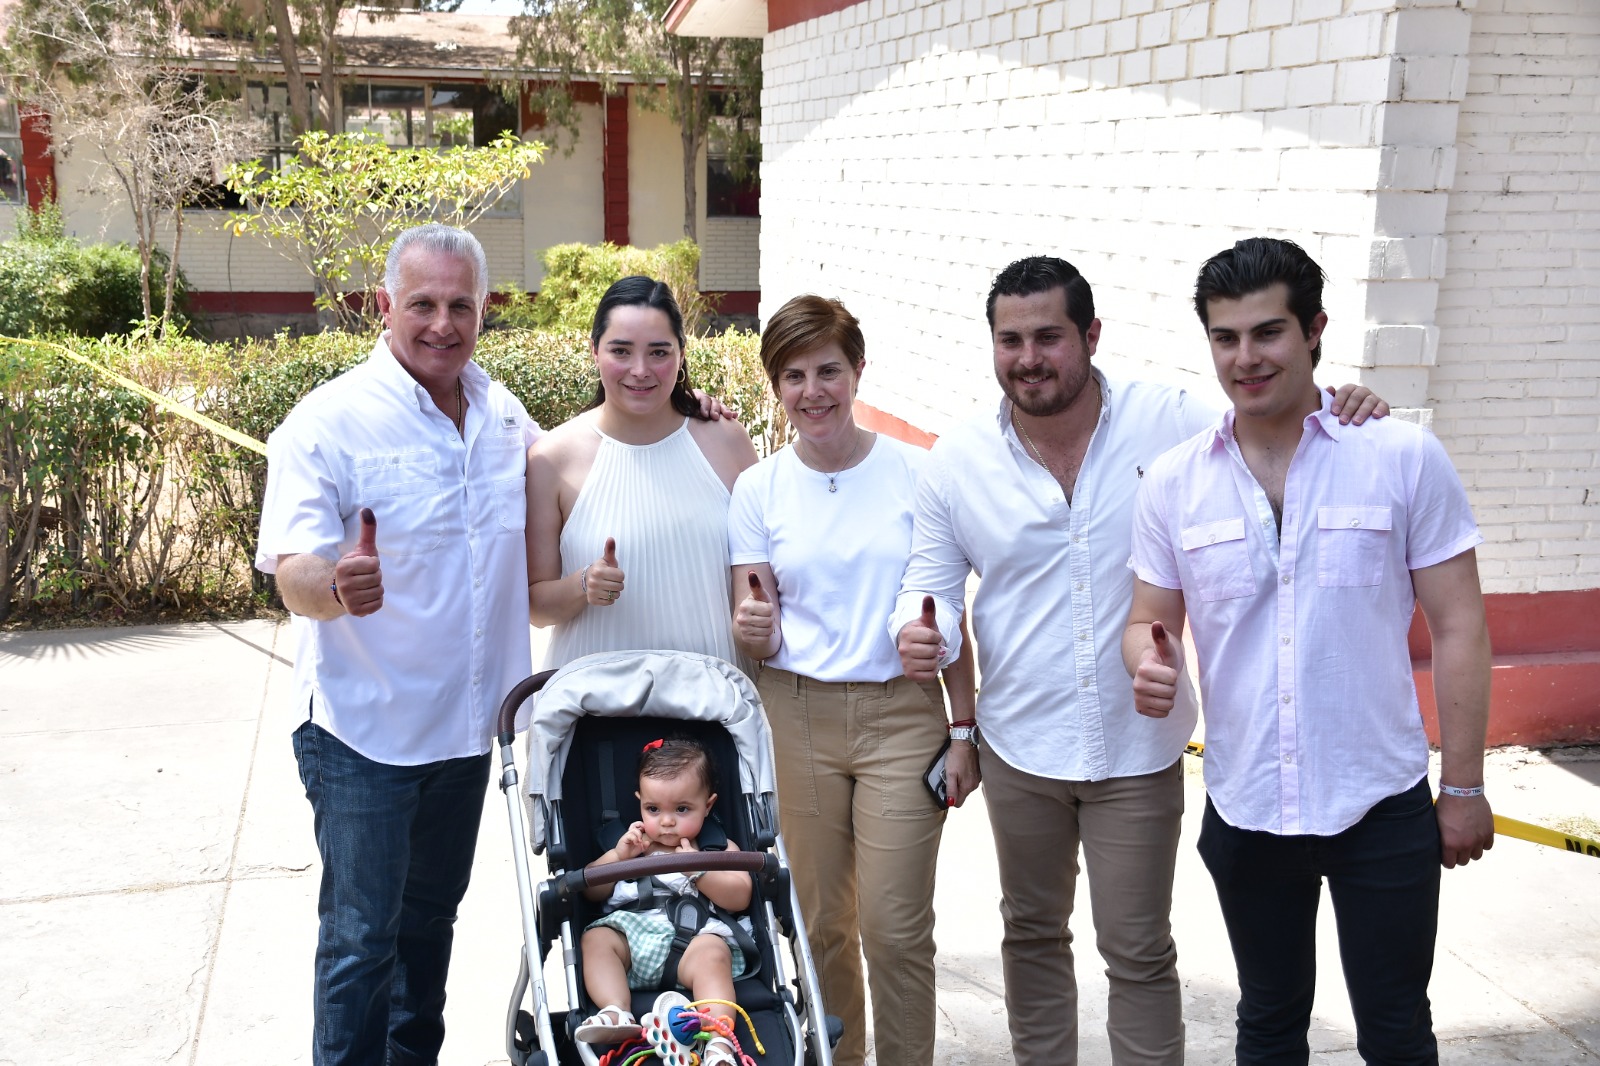 “Torreón decidió vivir seguro y en paz, gracias a tu confianza, seguiremos engrandeciendo a nuestro querido municipio” Román Cepeda